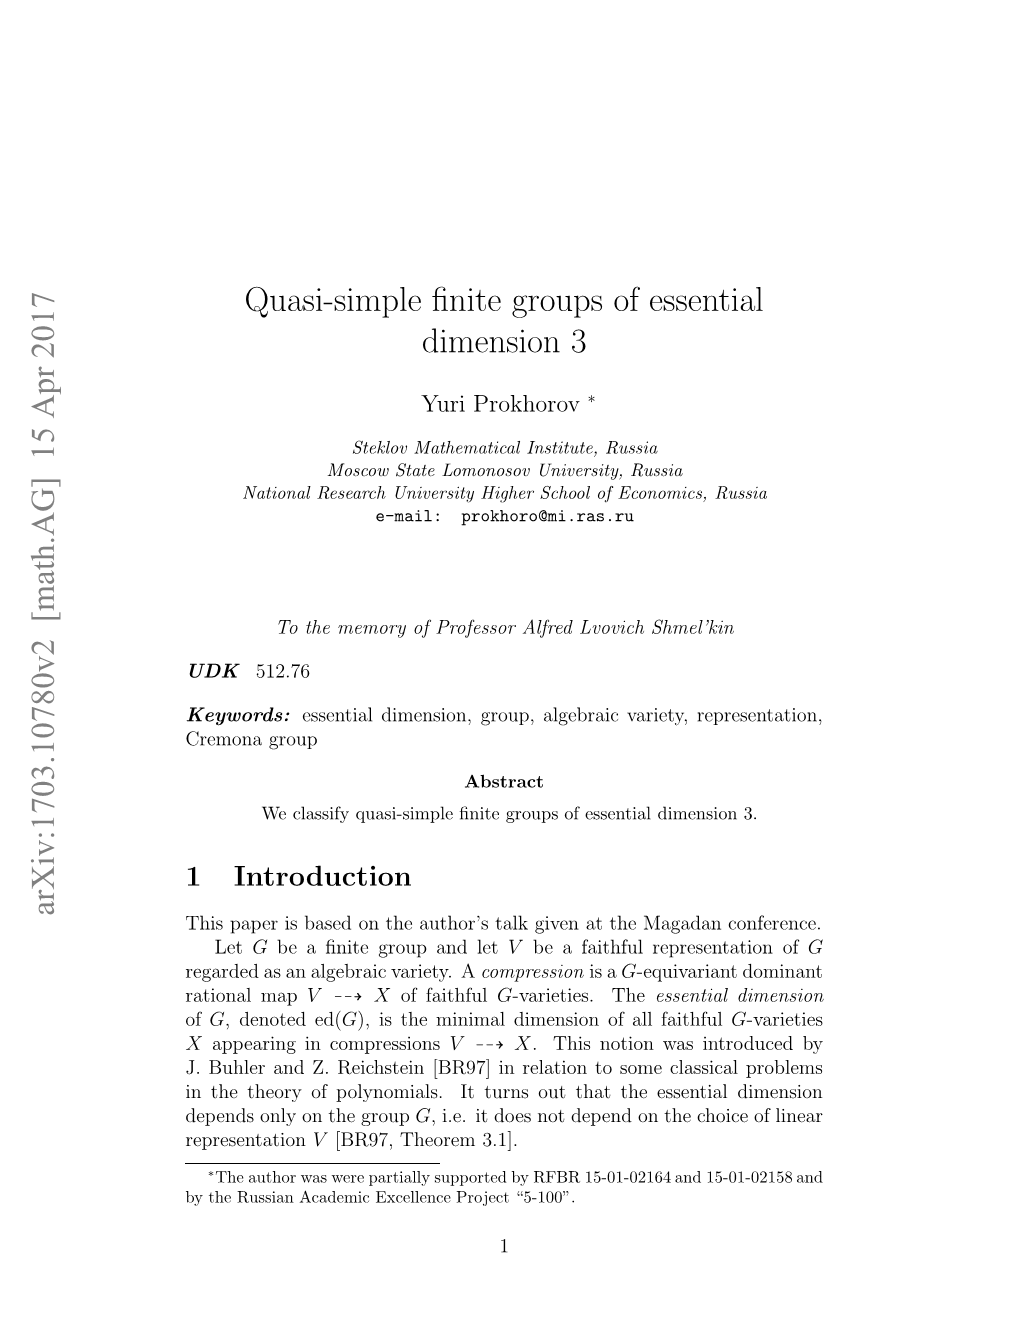 Quasi-Simple Finite Groups of Essential Dimension 3